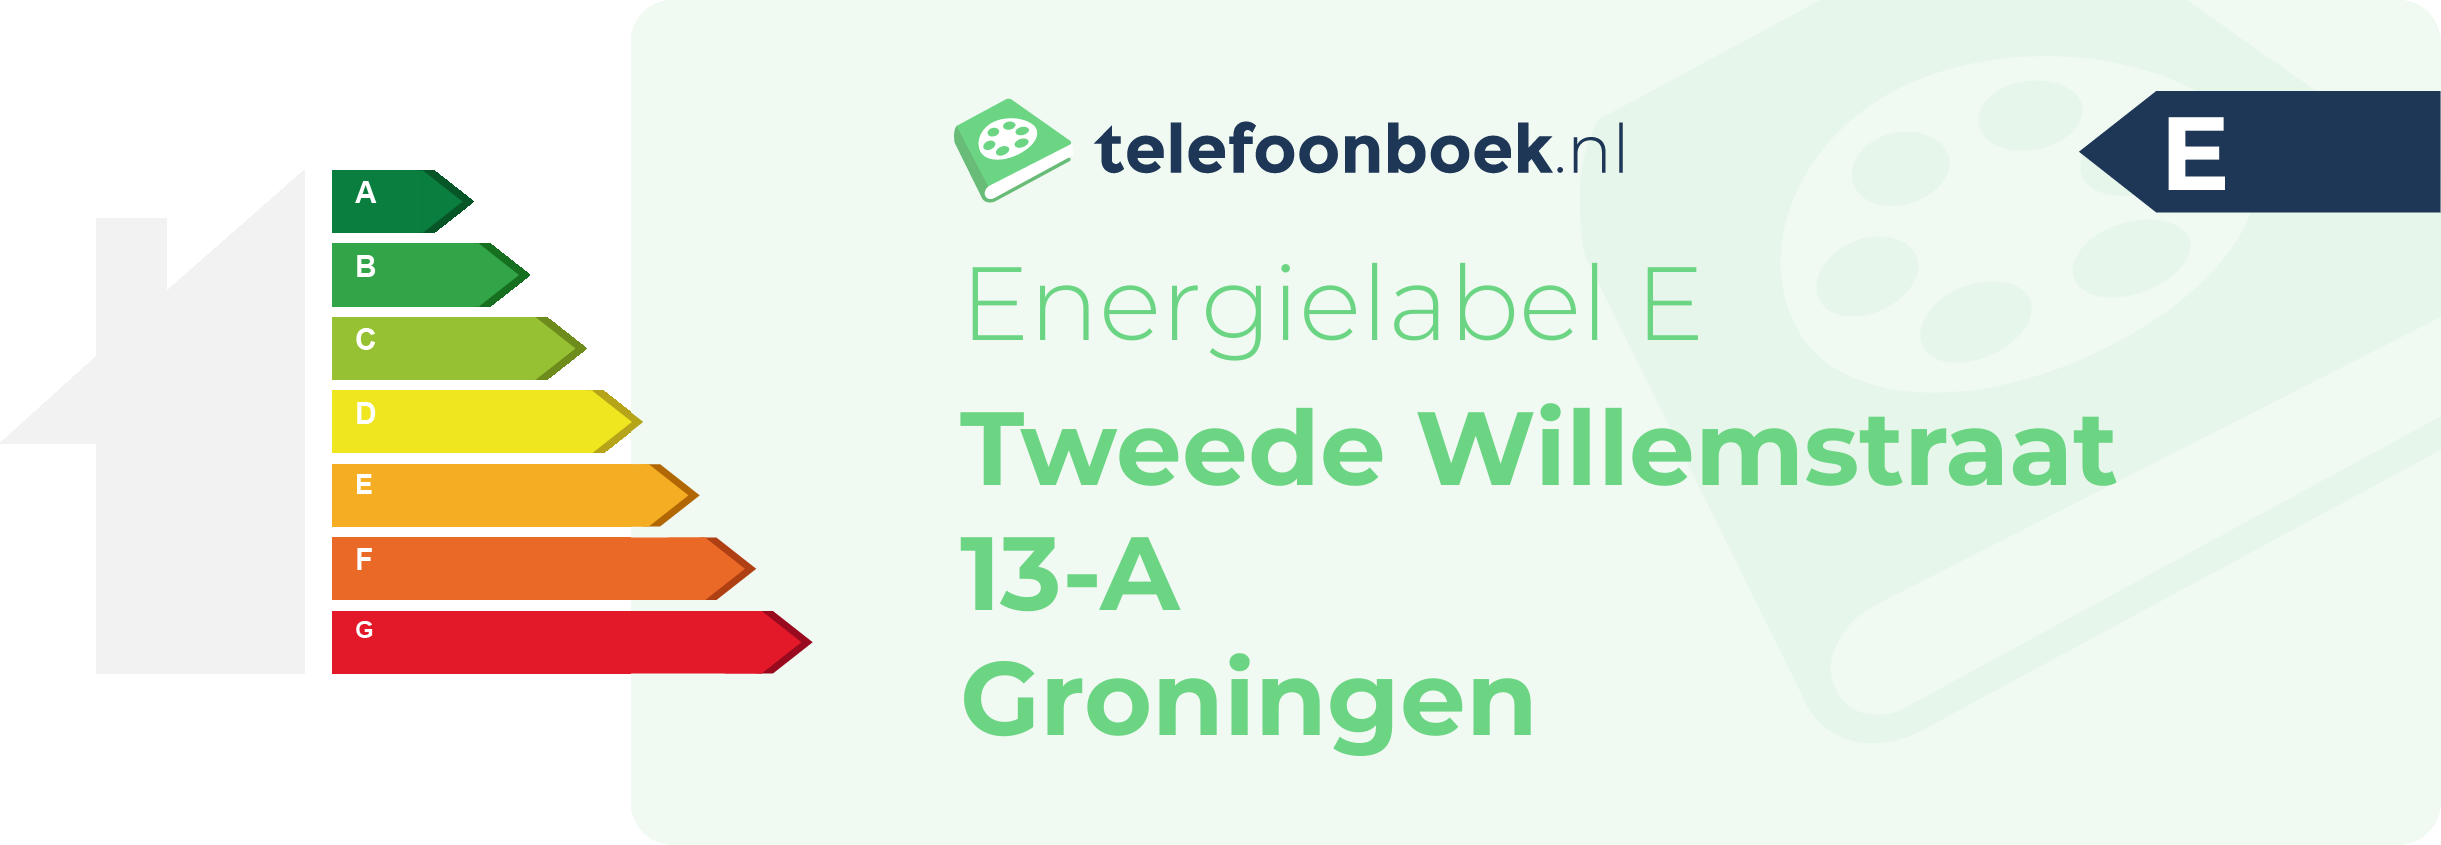 Energielabel Tweede Willemstraat 13-A Groningen